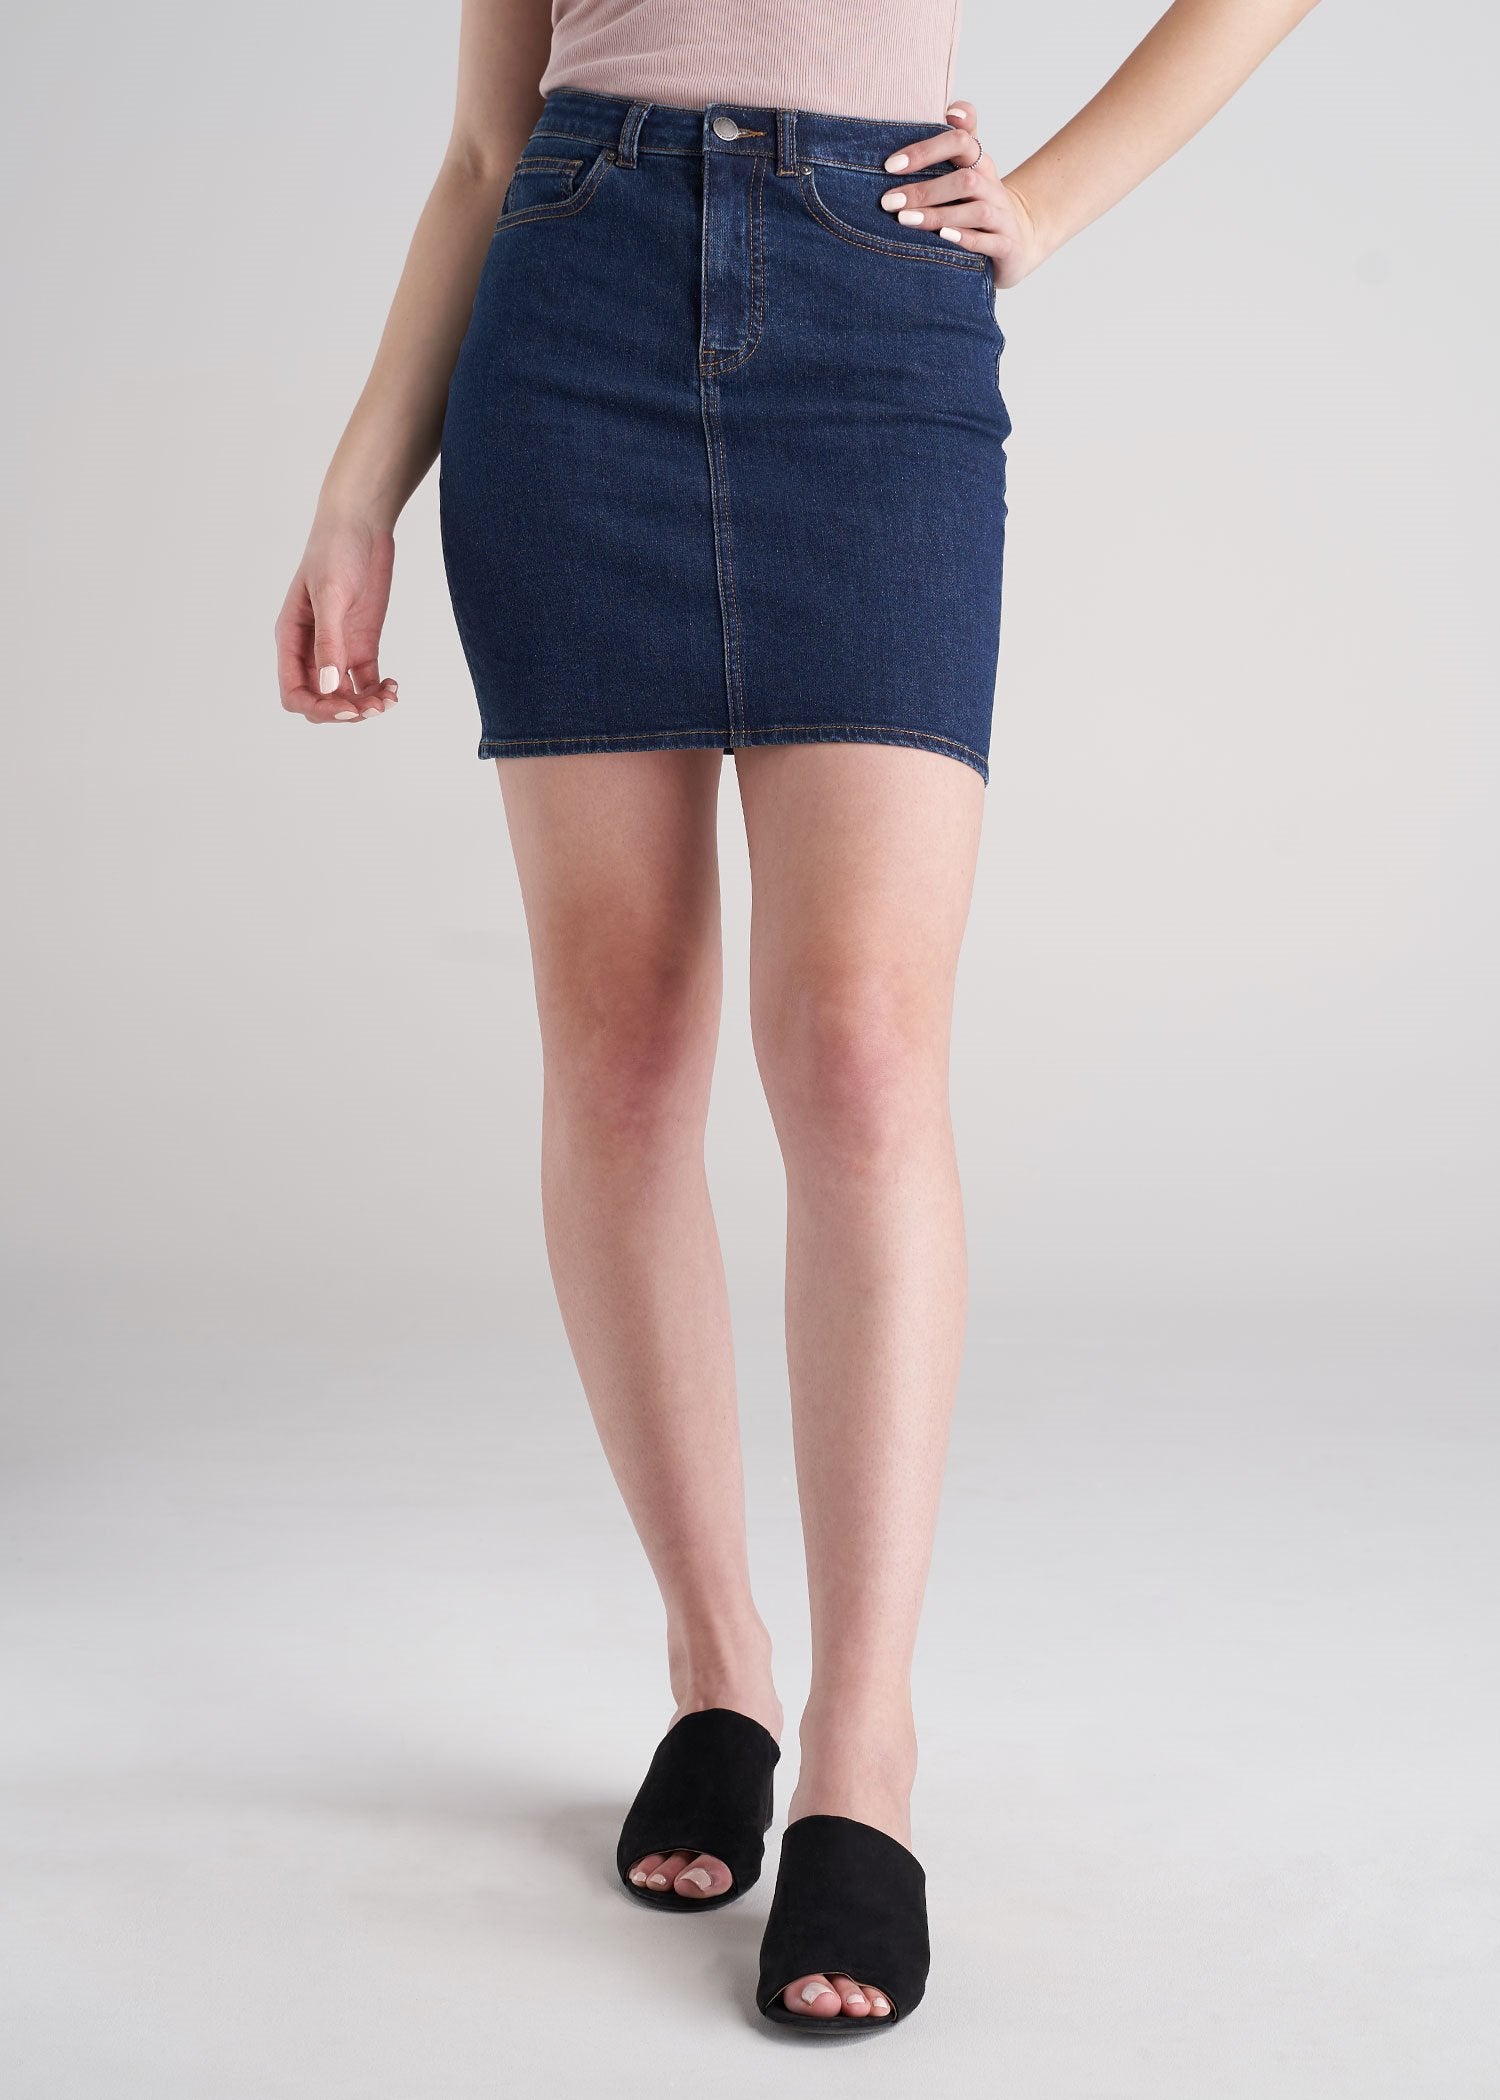 Classic Women's Tall Denim Skirt | American Tall